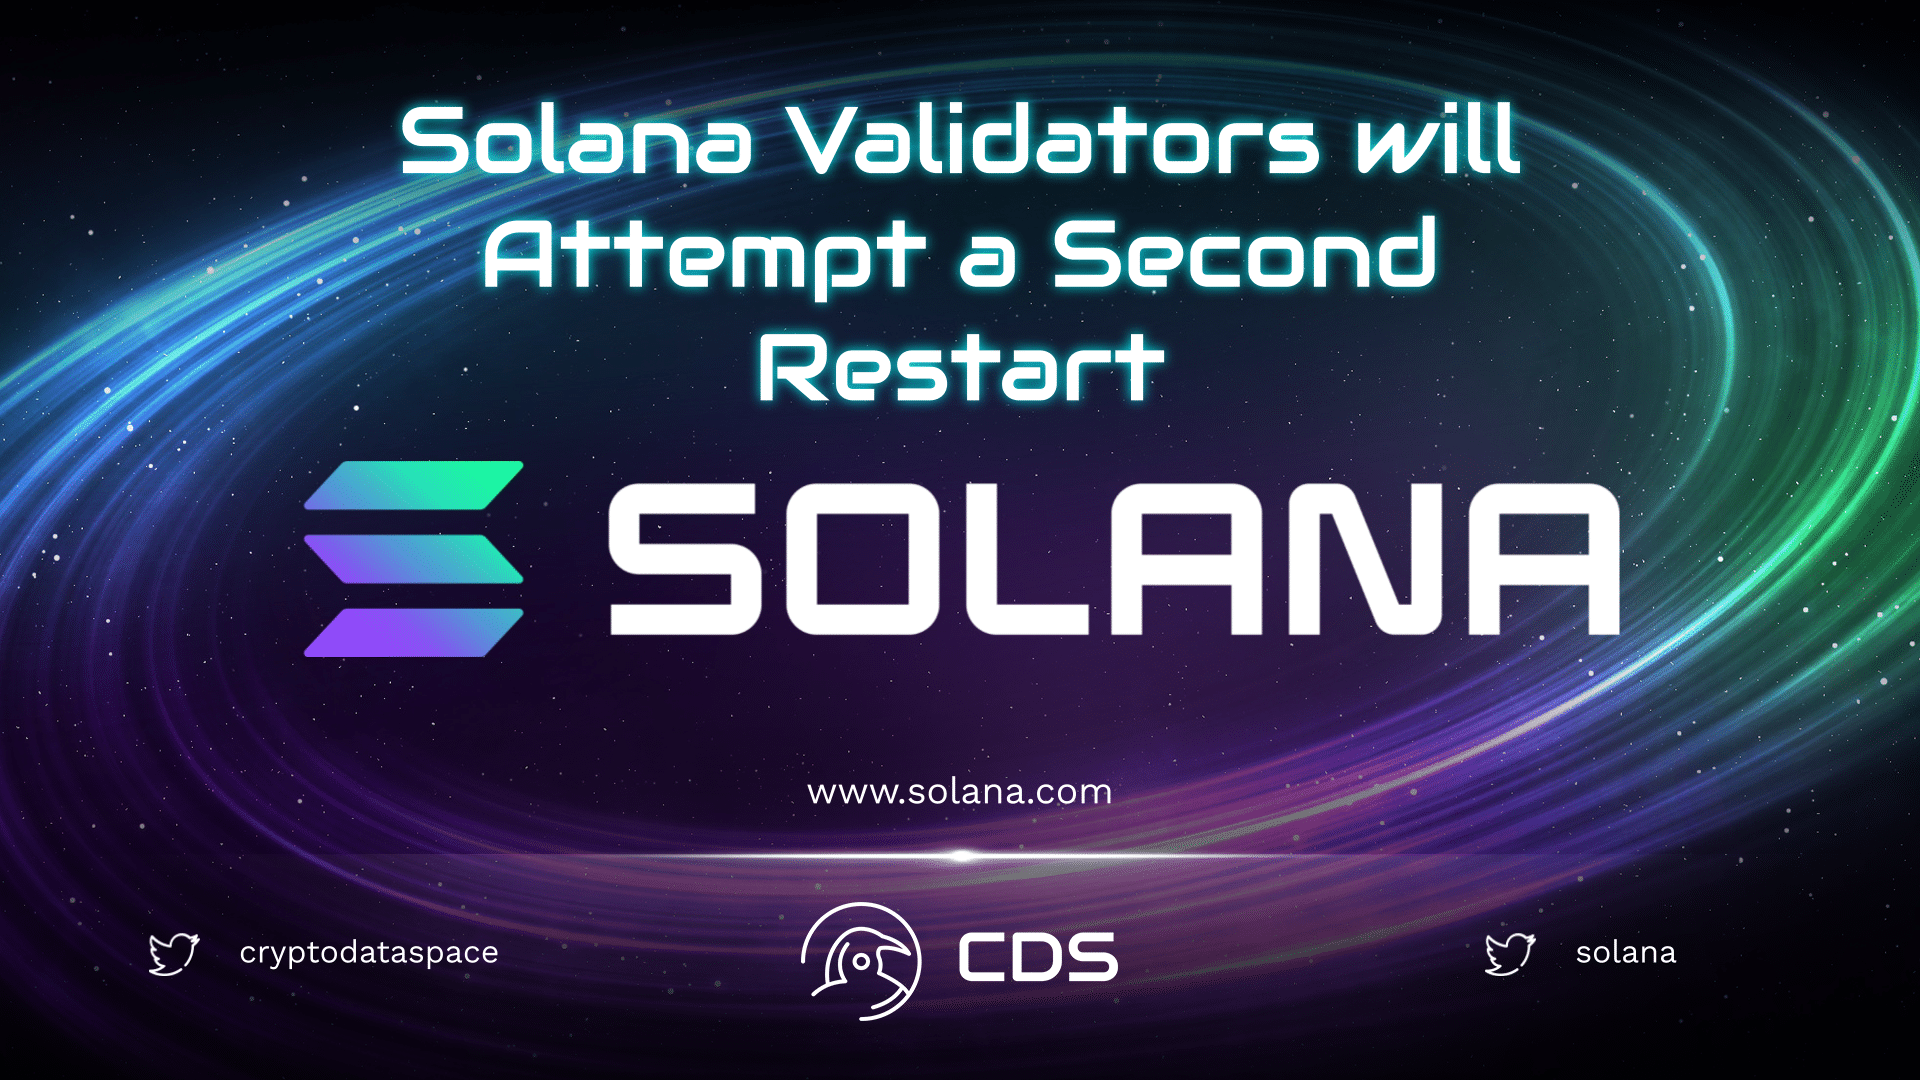 Solana Validators will Attempt a Second Restart